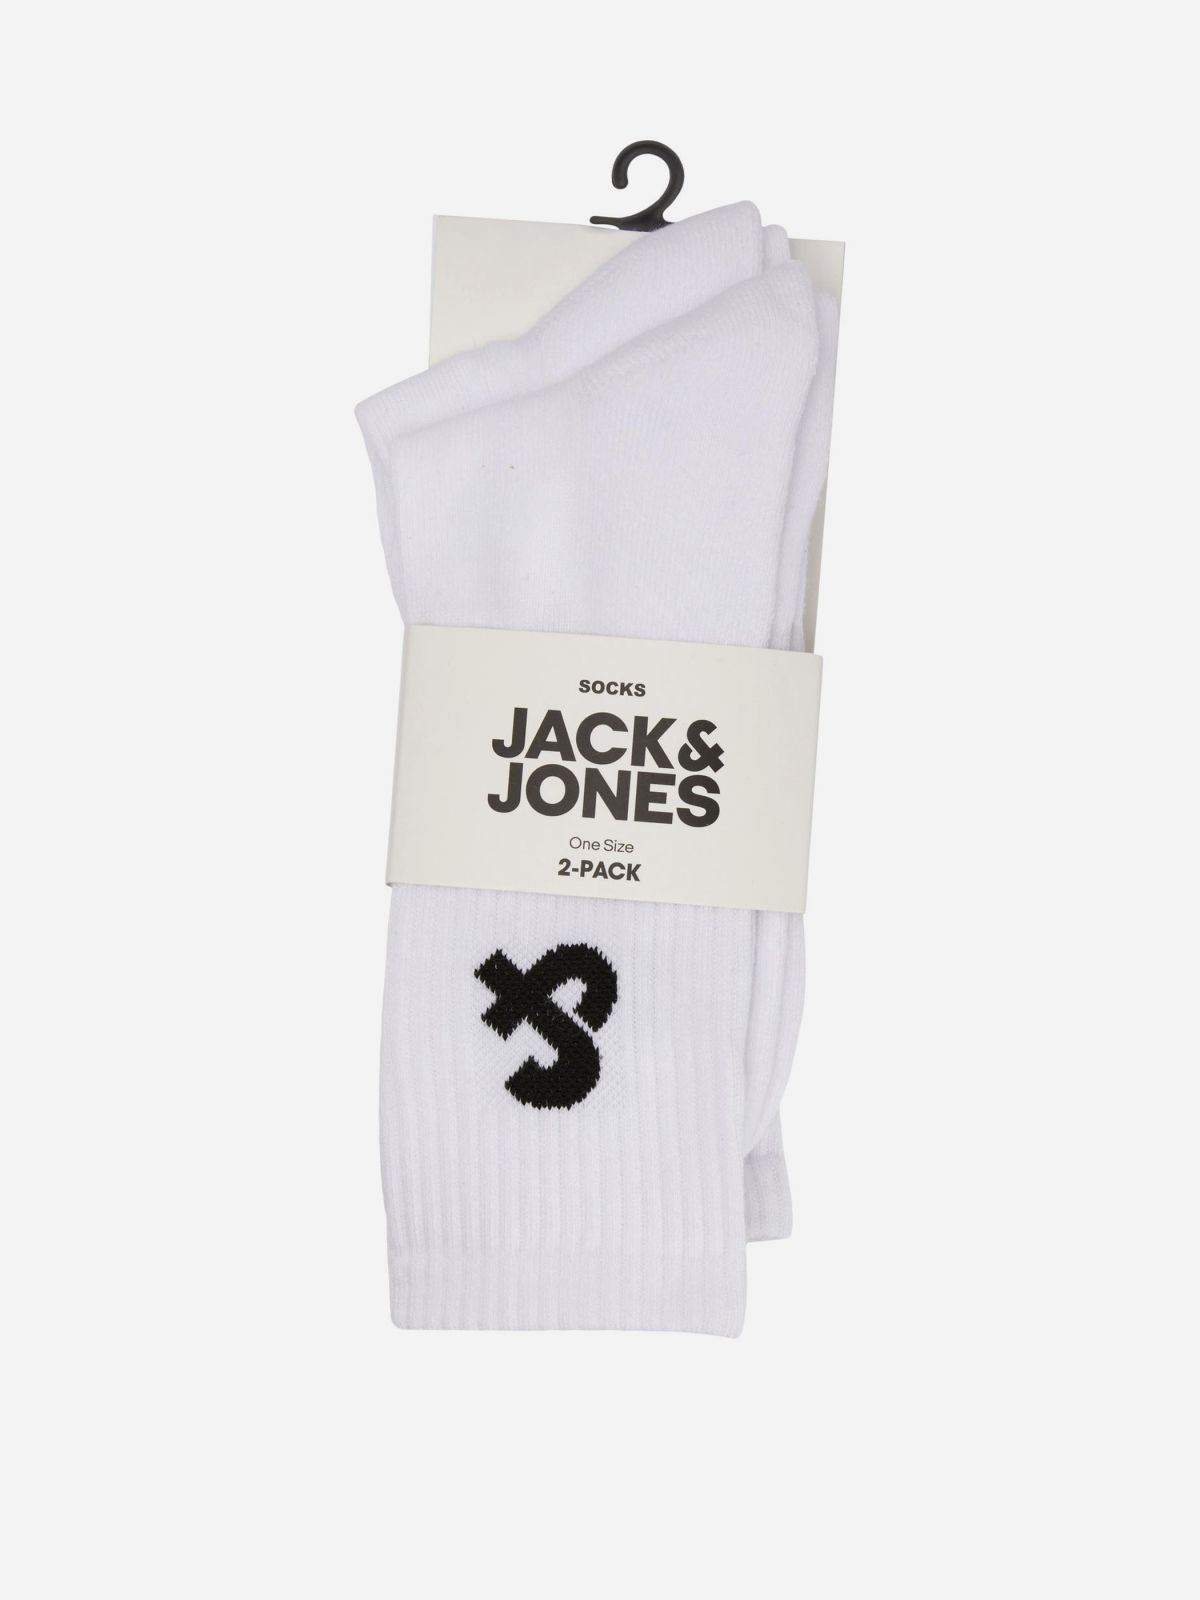  גרביים גבוהות עם הדפס לוגו / גברים של JACK AND JONES